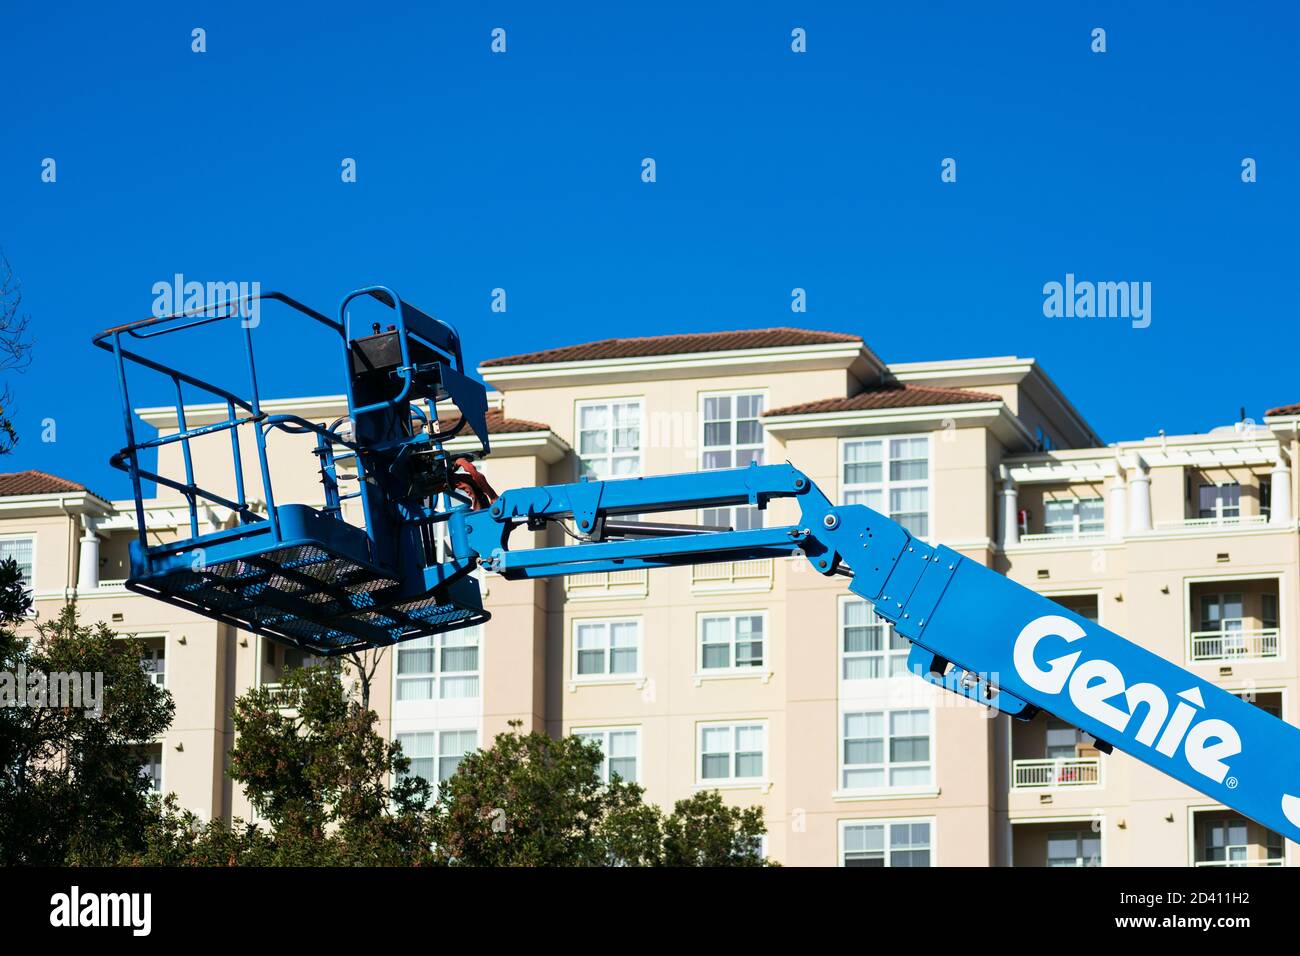 Relevage de la flèche télescopique Genie. Complexe d'appartements moderne à plusieurs étages en arrière-plan - San Jose, Californie, États-Unis - 2020 Banque D'Images